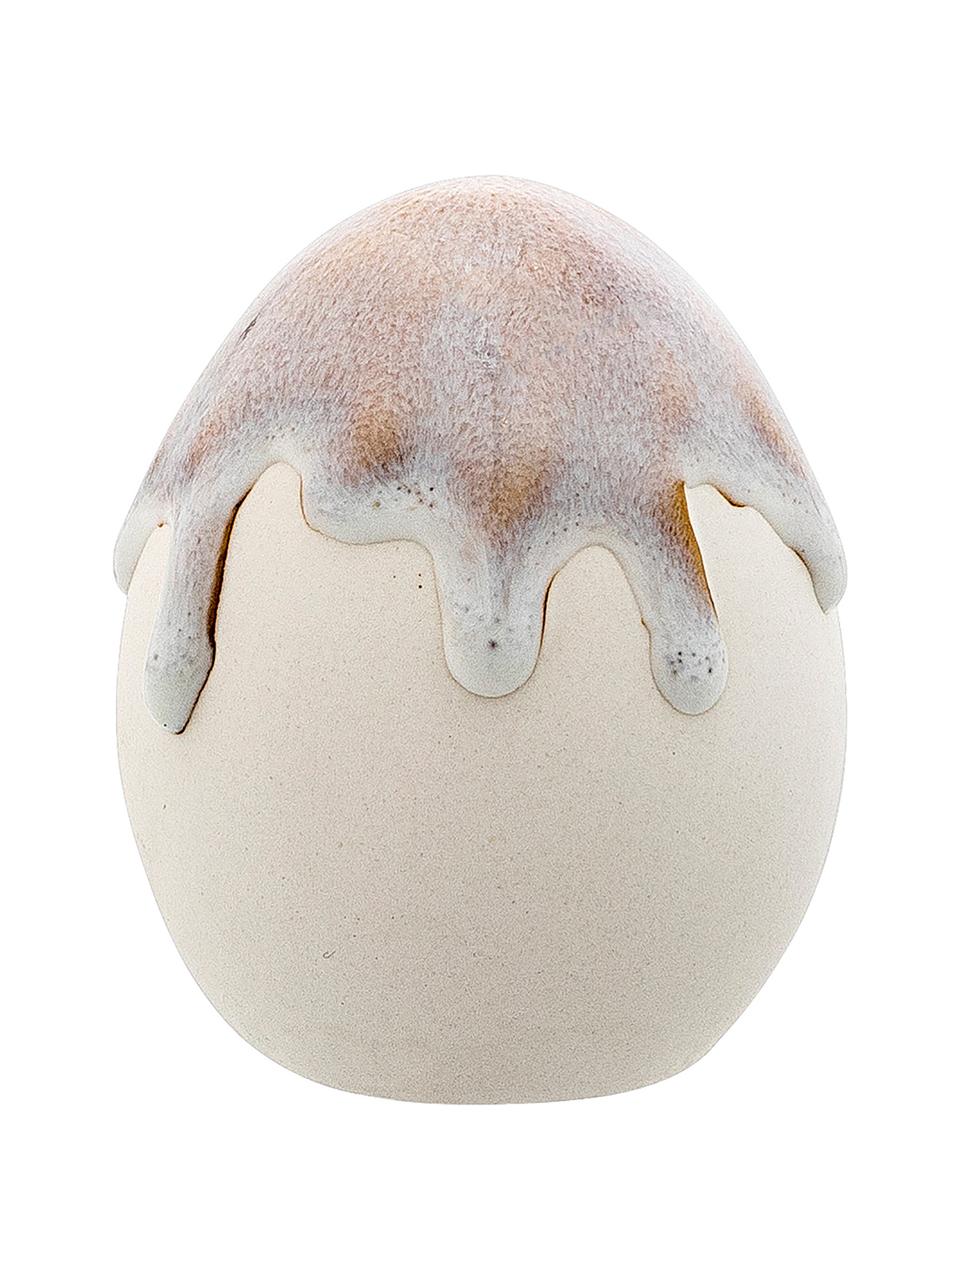 Jajo dekoracyjne Drop, Porcelana, Szary, biały, brązowy, Ø 7 x 9 cm